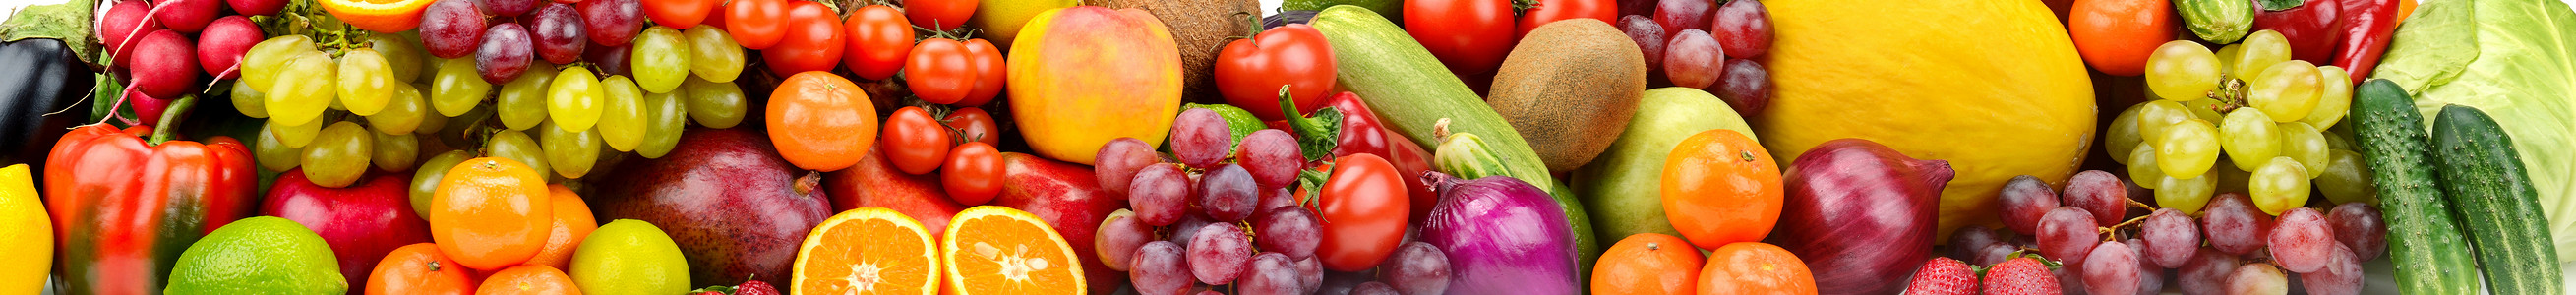 全景照片健康蔬菜水果和浆农业背景图片